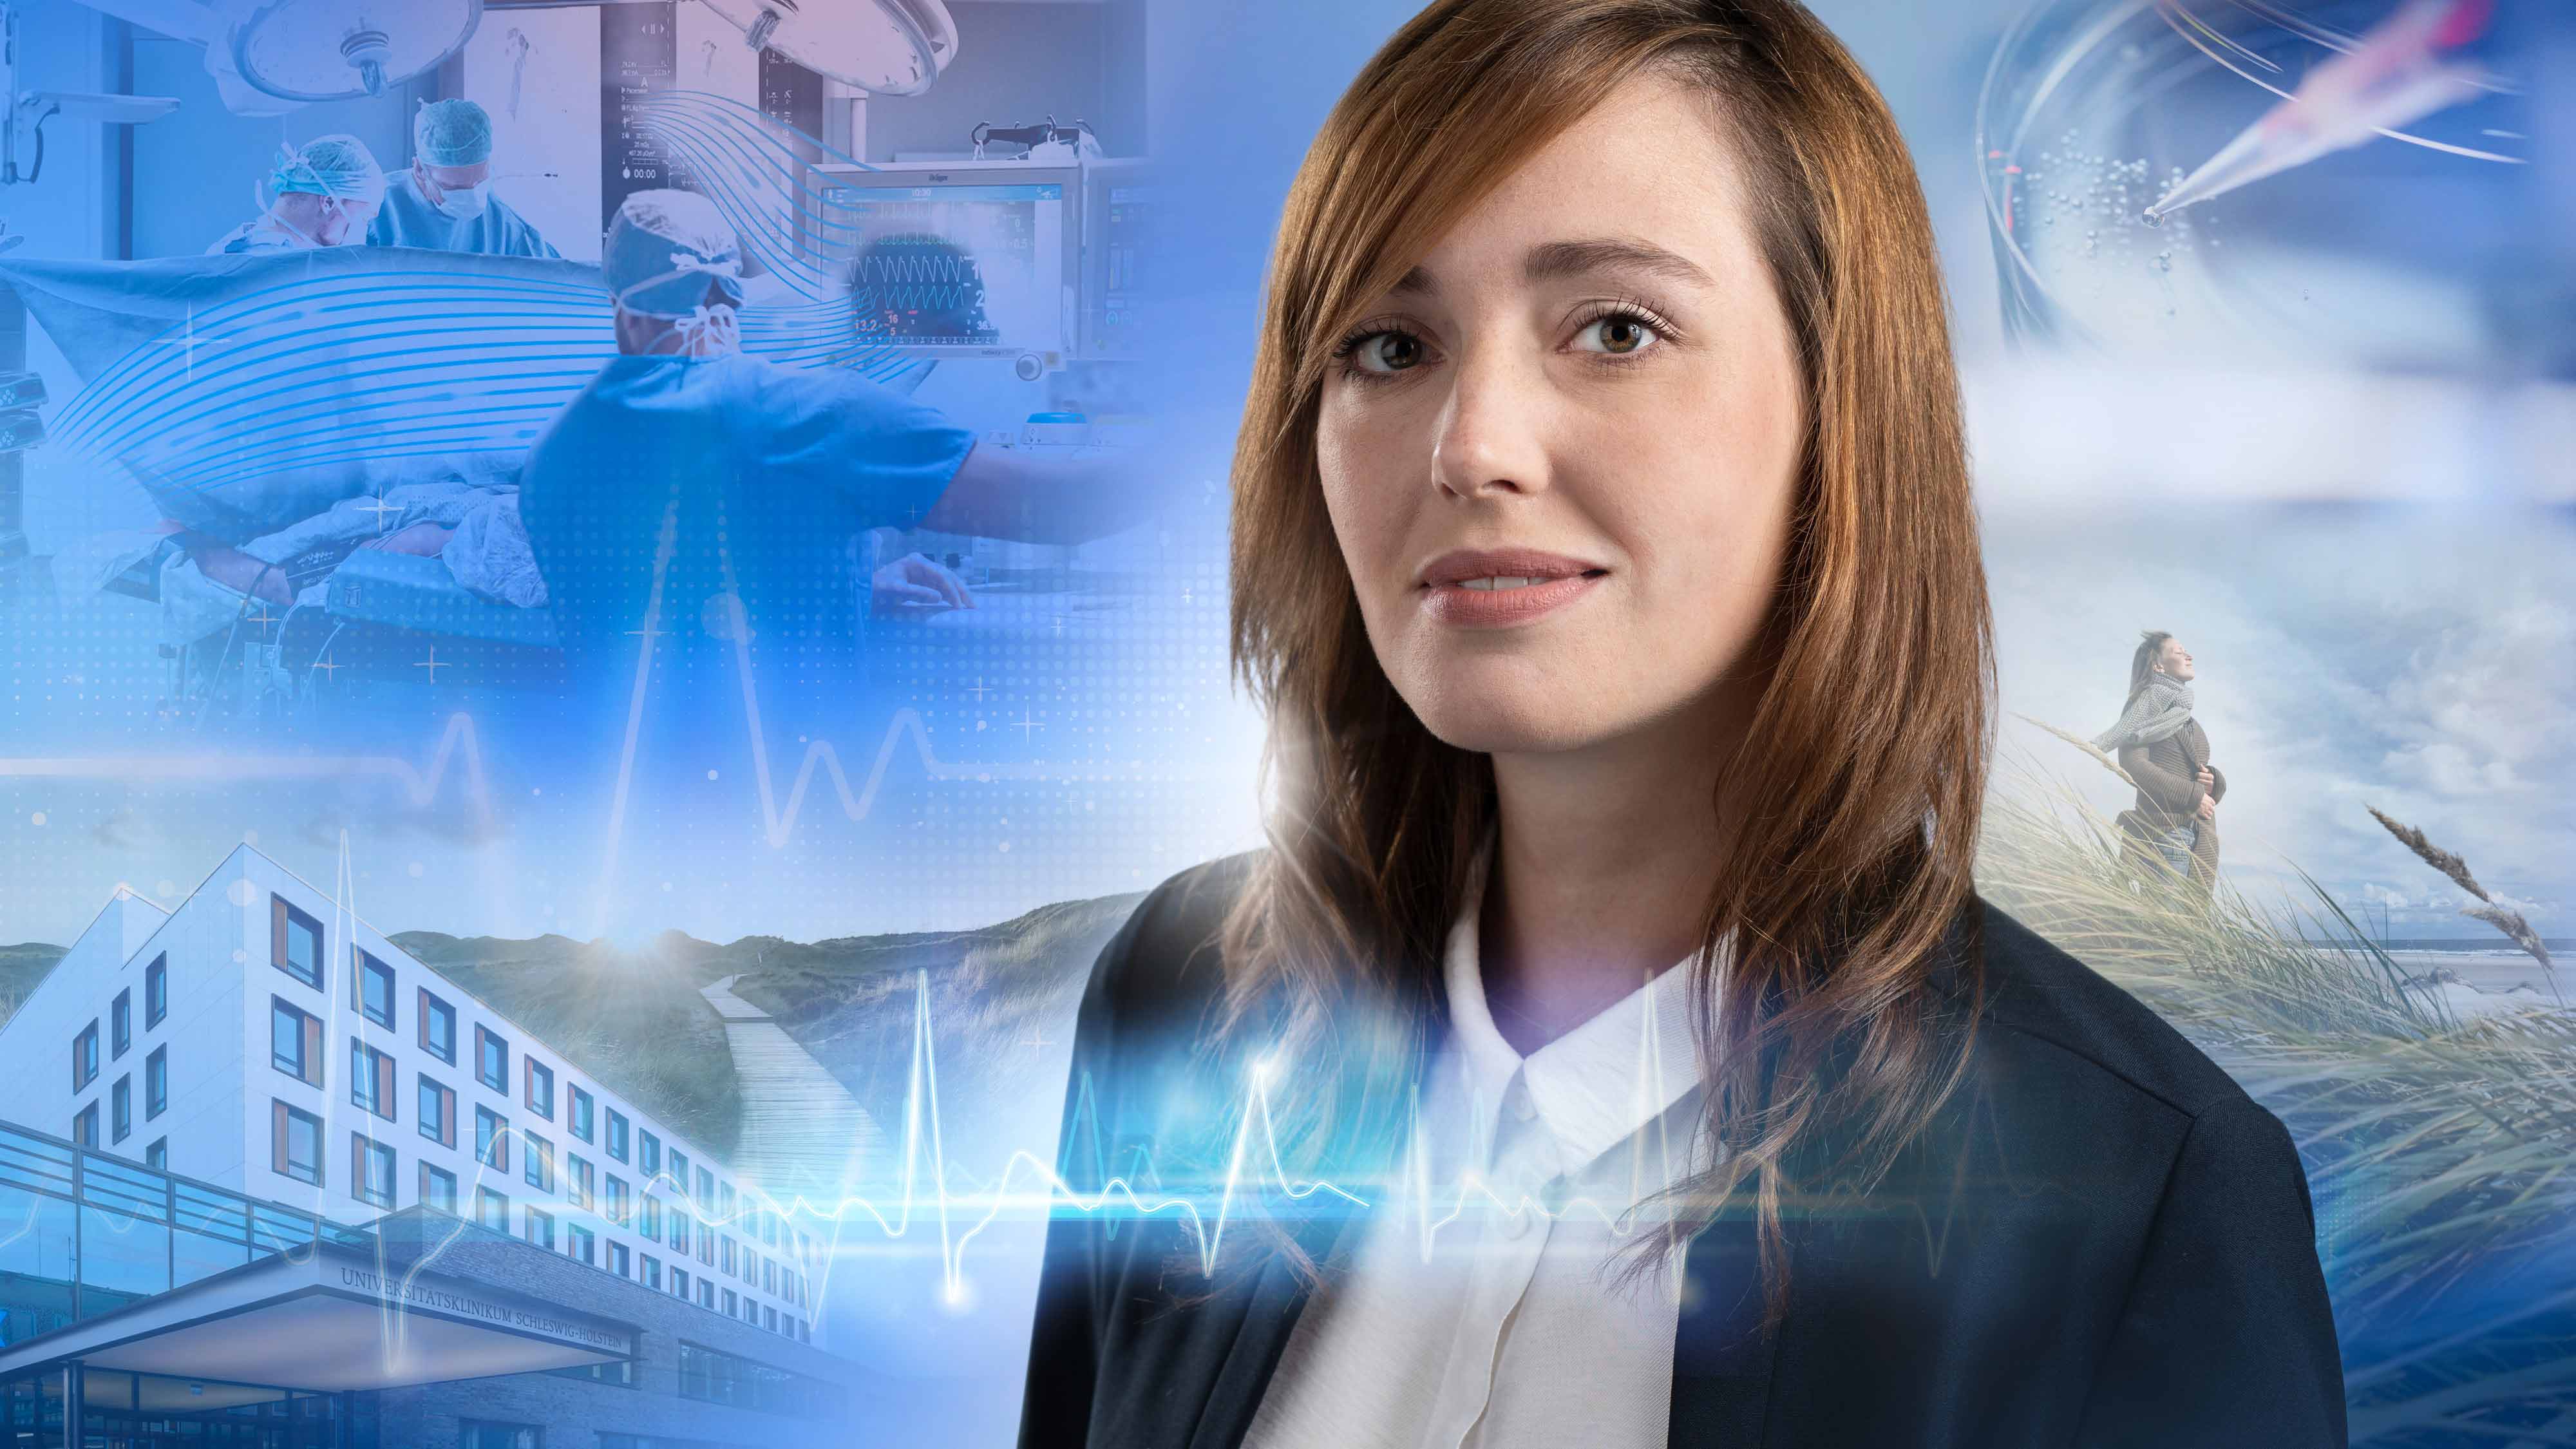  Eine Frau mit rotbraunen Haaren blickt in die Kamera. Im Hintergrund sind Bilder zum Thema Gesundheitswirtschaft: eine Pipette und Petrischale, ein Operationssaal, ein Krankenhausgebäude und eine Frau am Strand.